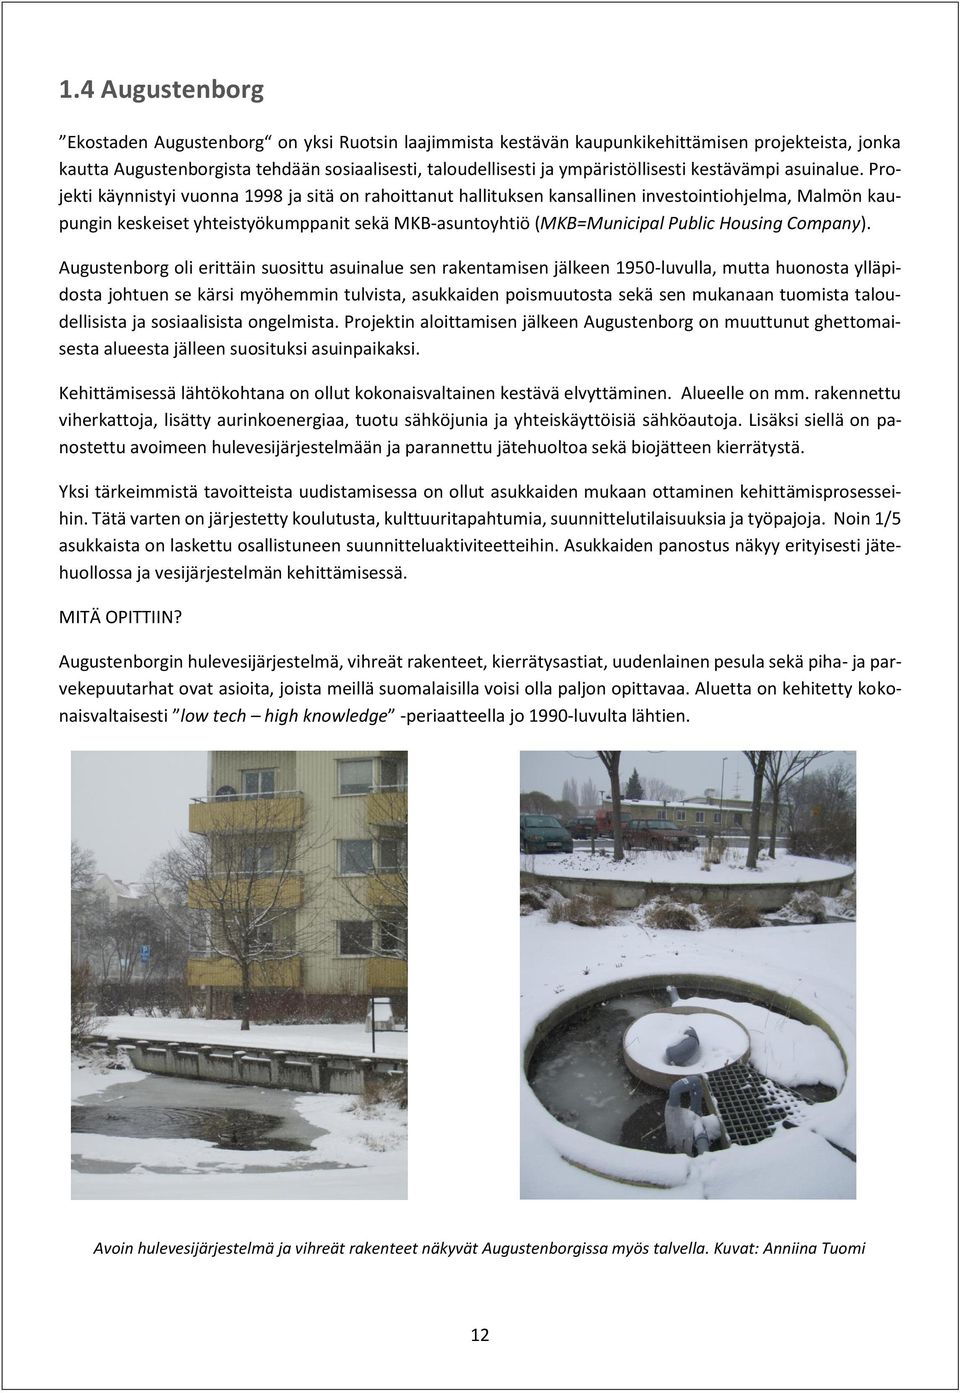 Projekti käynnistyi vuonna 1998 ja sitä on rahoittanut hallituksen kansallinen investointiohjelma, Malmön kaupungin keskeiset yhteistyökumppanit sekä MKB-asuntoyhtiö (MKB=Municipal Public Housing